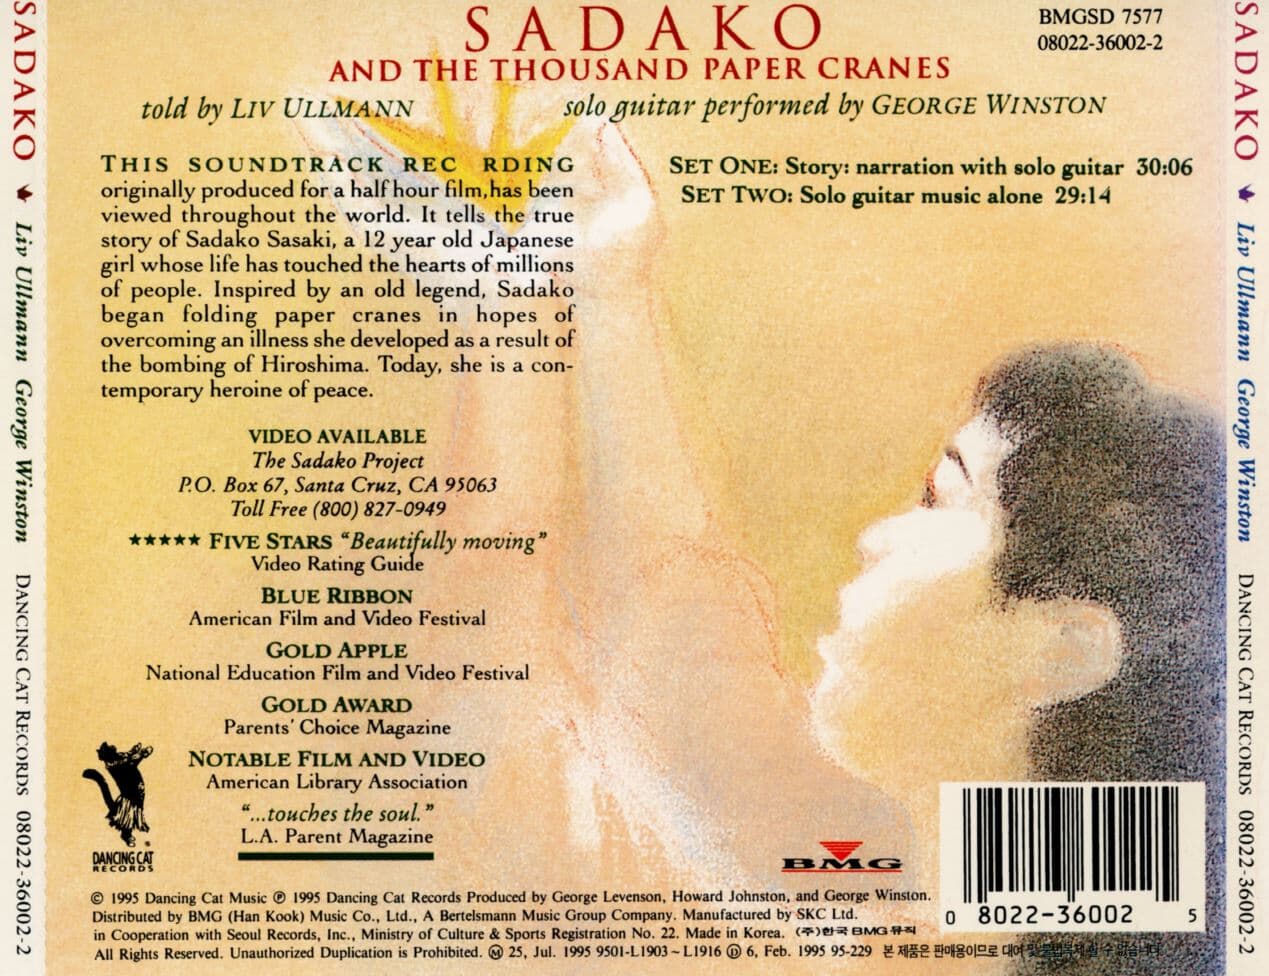 조지 윈스턴 - George Winston - Sadako And The Thousand Paper Cranes